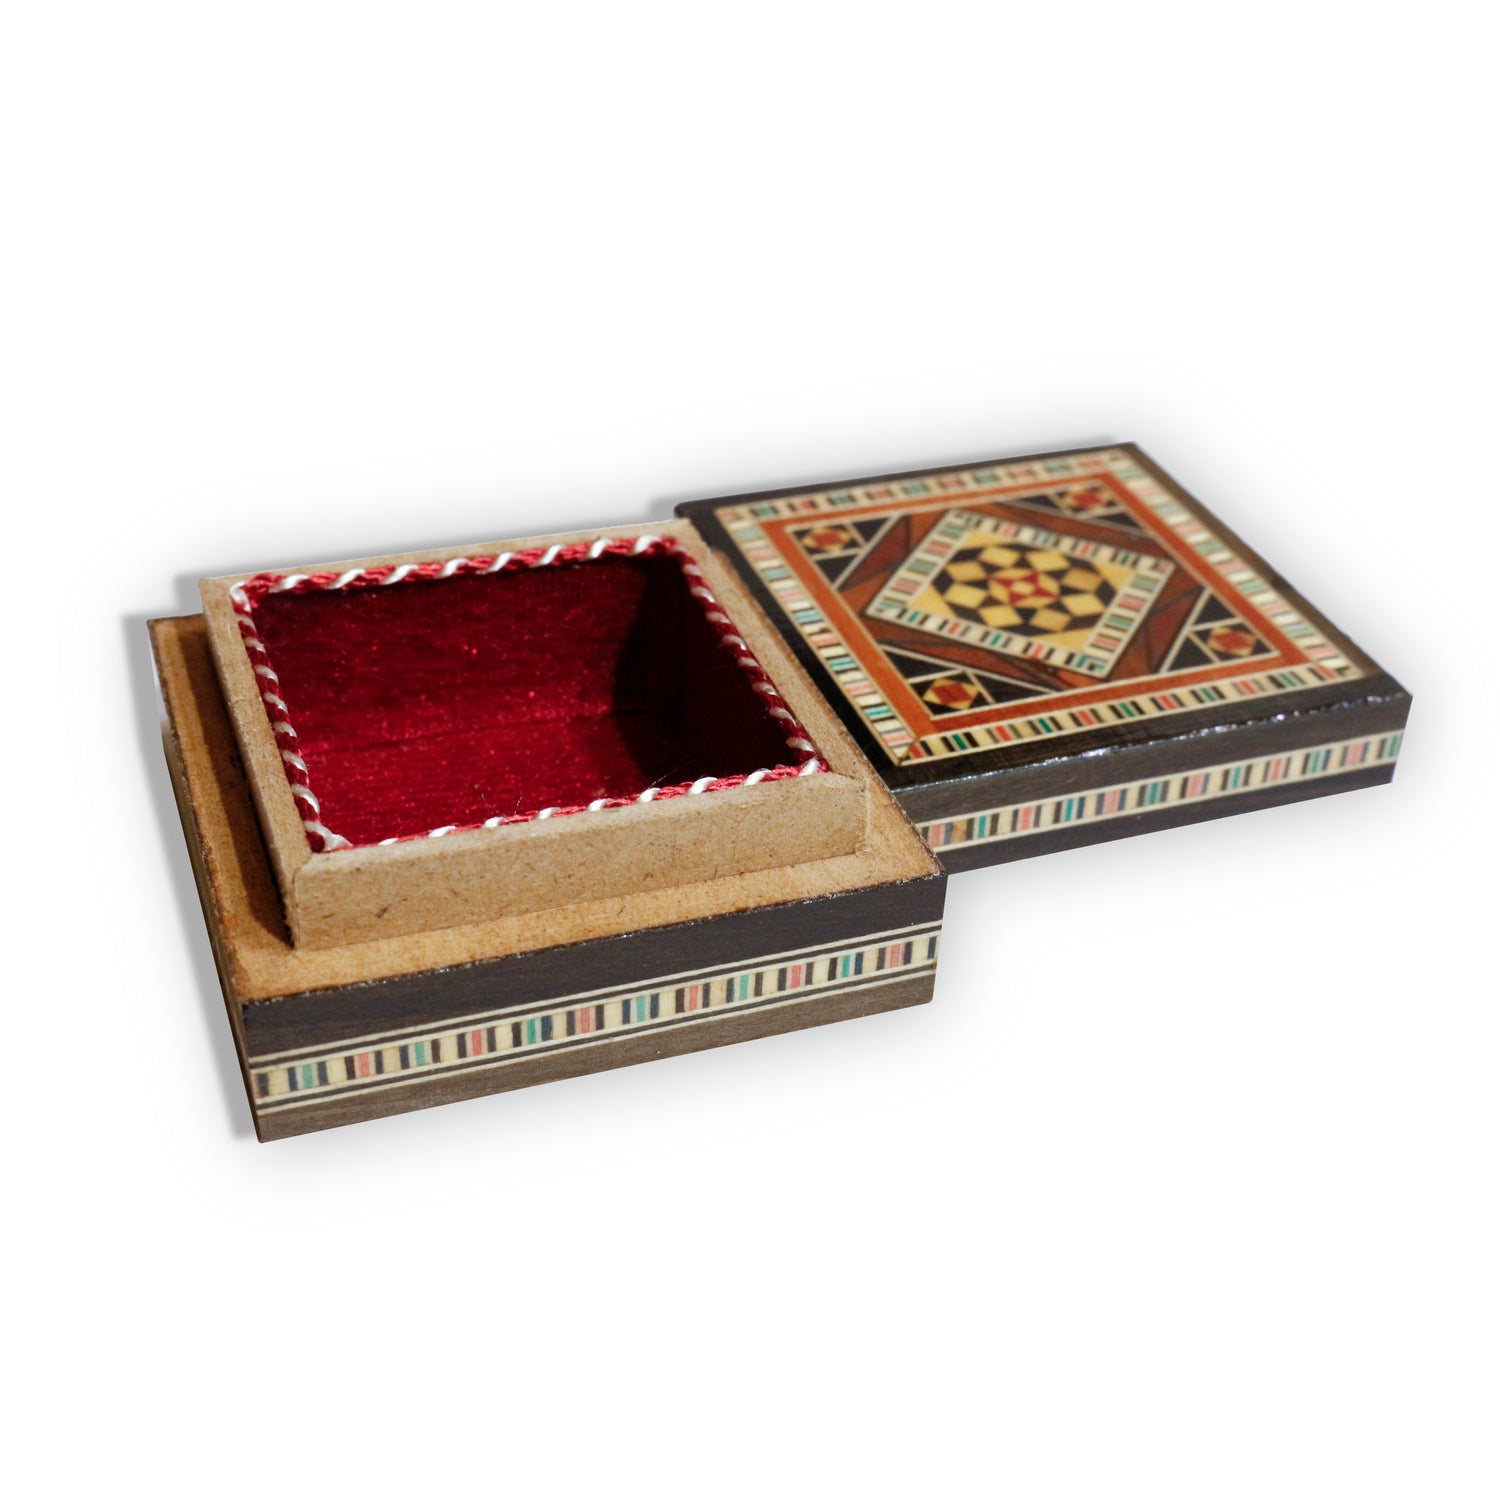 Neu Holz Mosaik Schatulle,Box,Kästchen, Damaskunst K 1-3-02 - Damaskunst - [variant_title]-[option1]